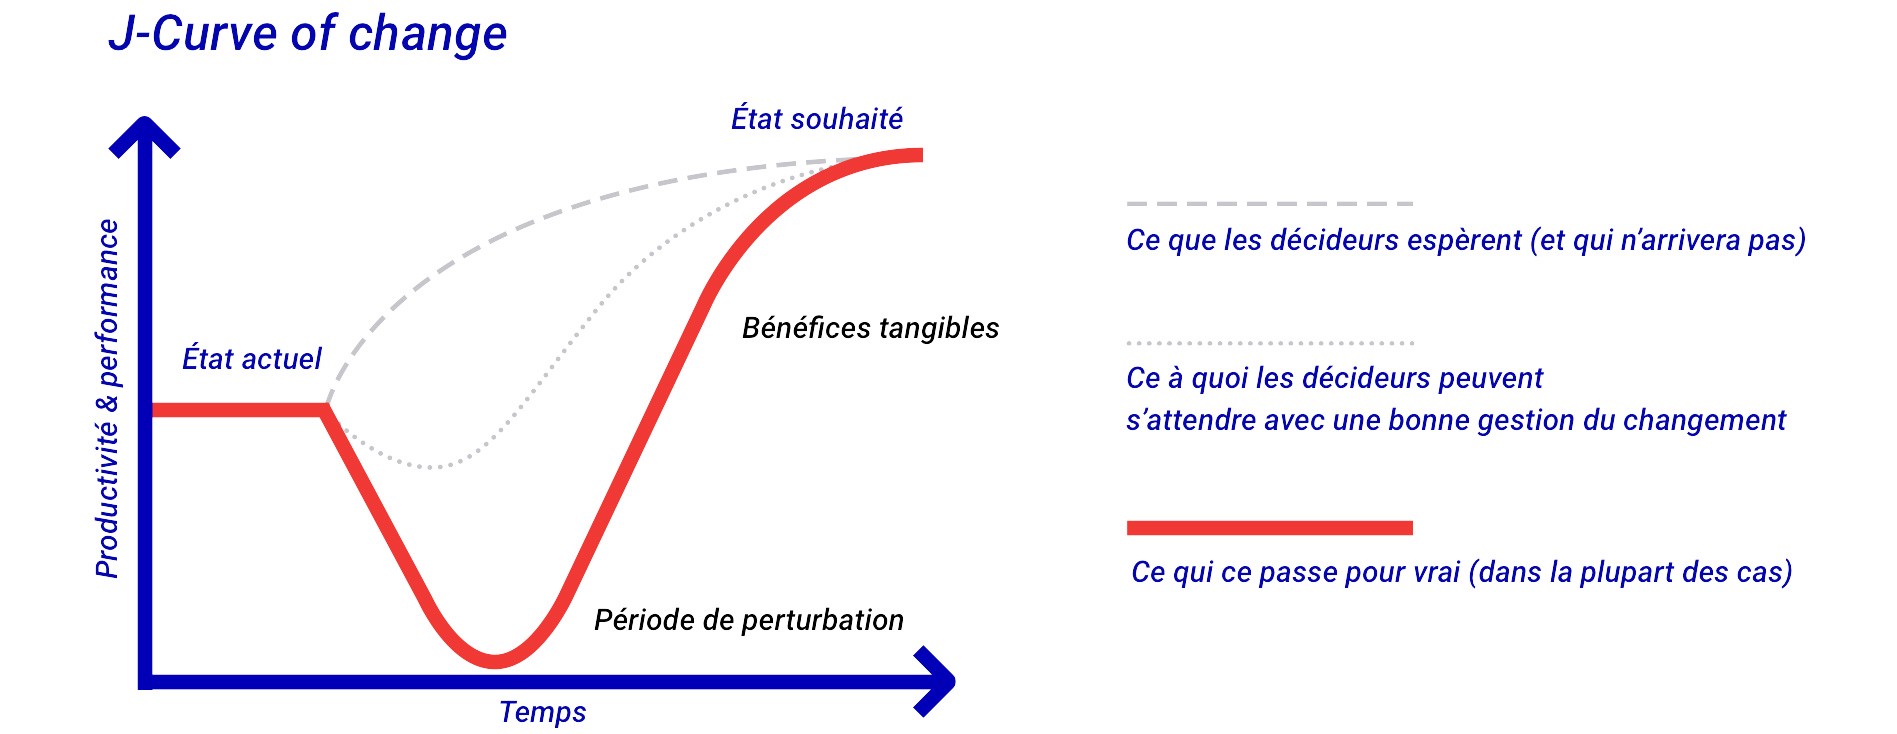 Illustration de la J-Curve of change